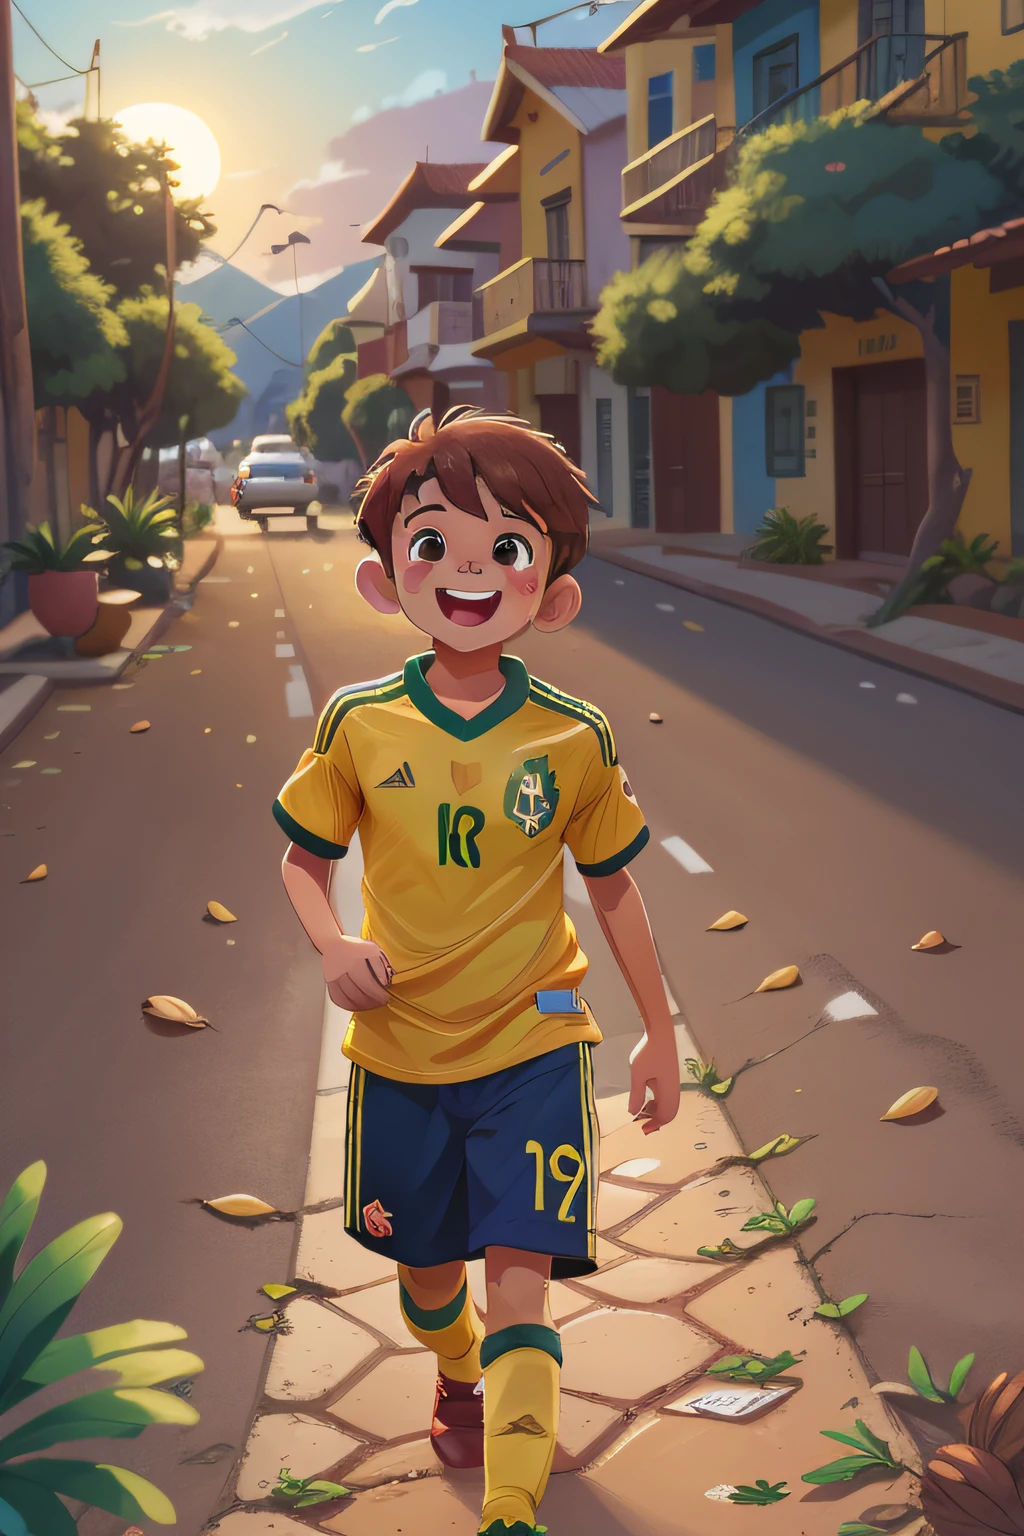 9歳の男の子, ショートヘア, 切る, 栗, olhos 栗, ブラジル代表サッカーチームのシャツ, 黄色, 夕暮れ時の美しい山岳風景の中で一人でハイキング, ハッピー, ディズニーシャネルスタイル, えーっと画像, 8k, ウルトラ.